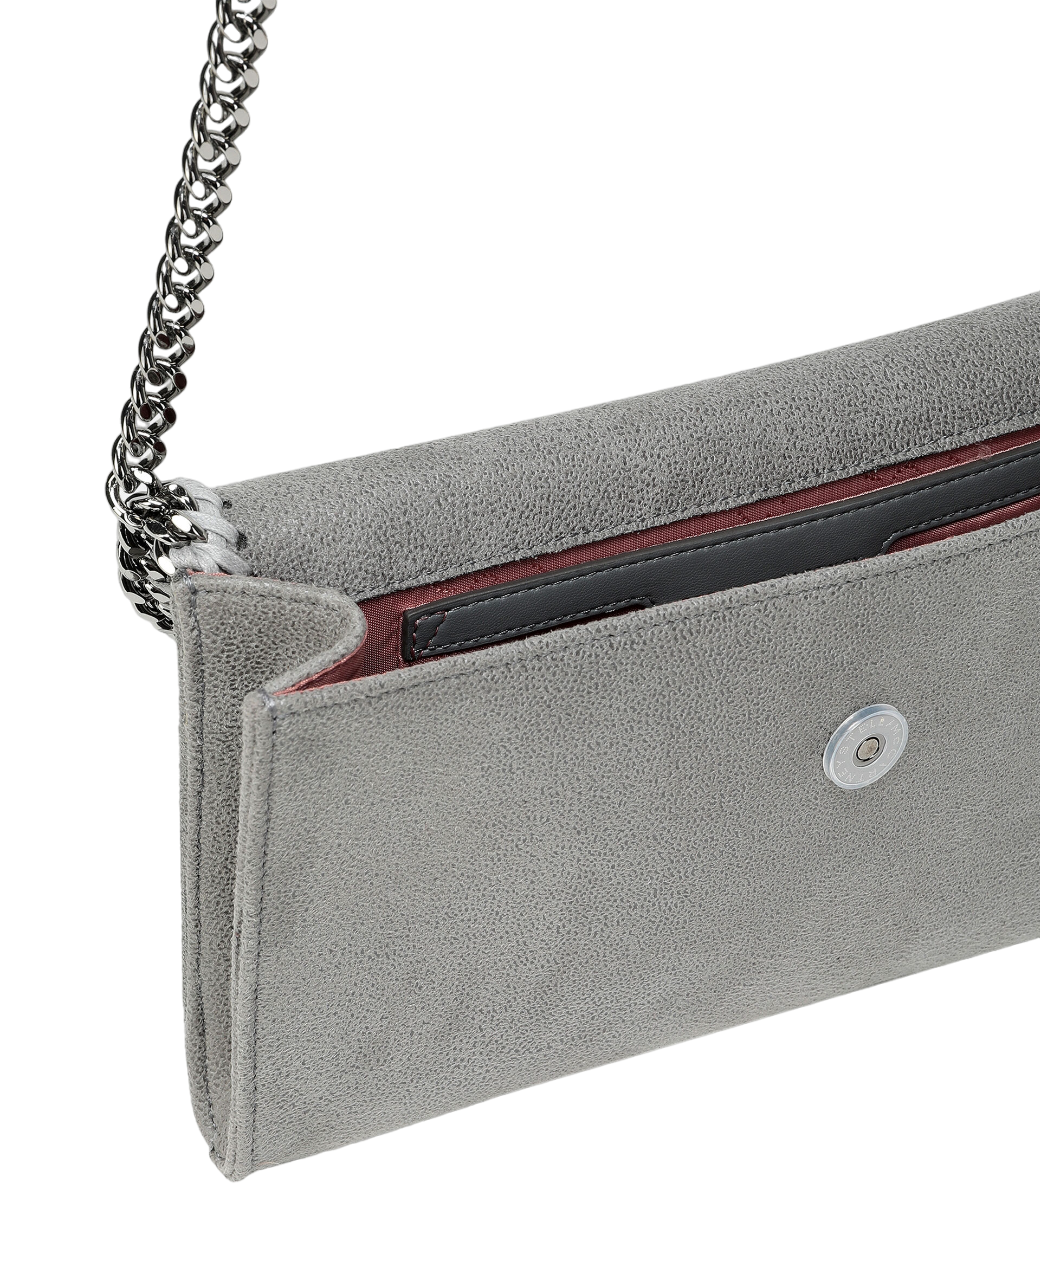 Falabella Wallet Crossbody Bag (Grey)